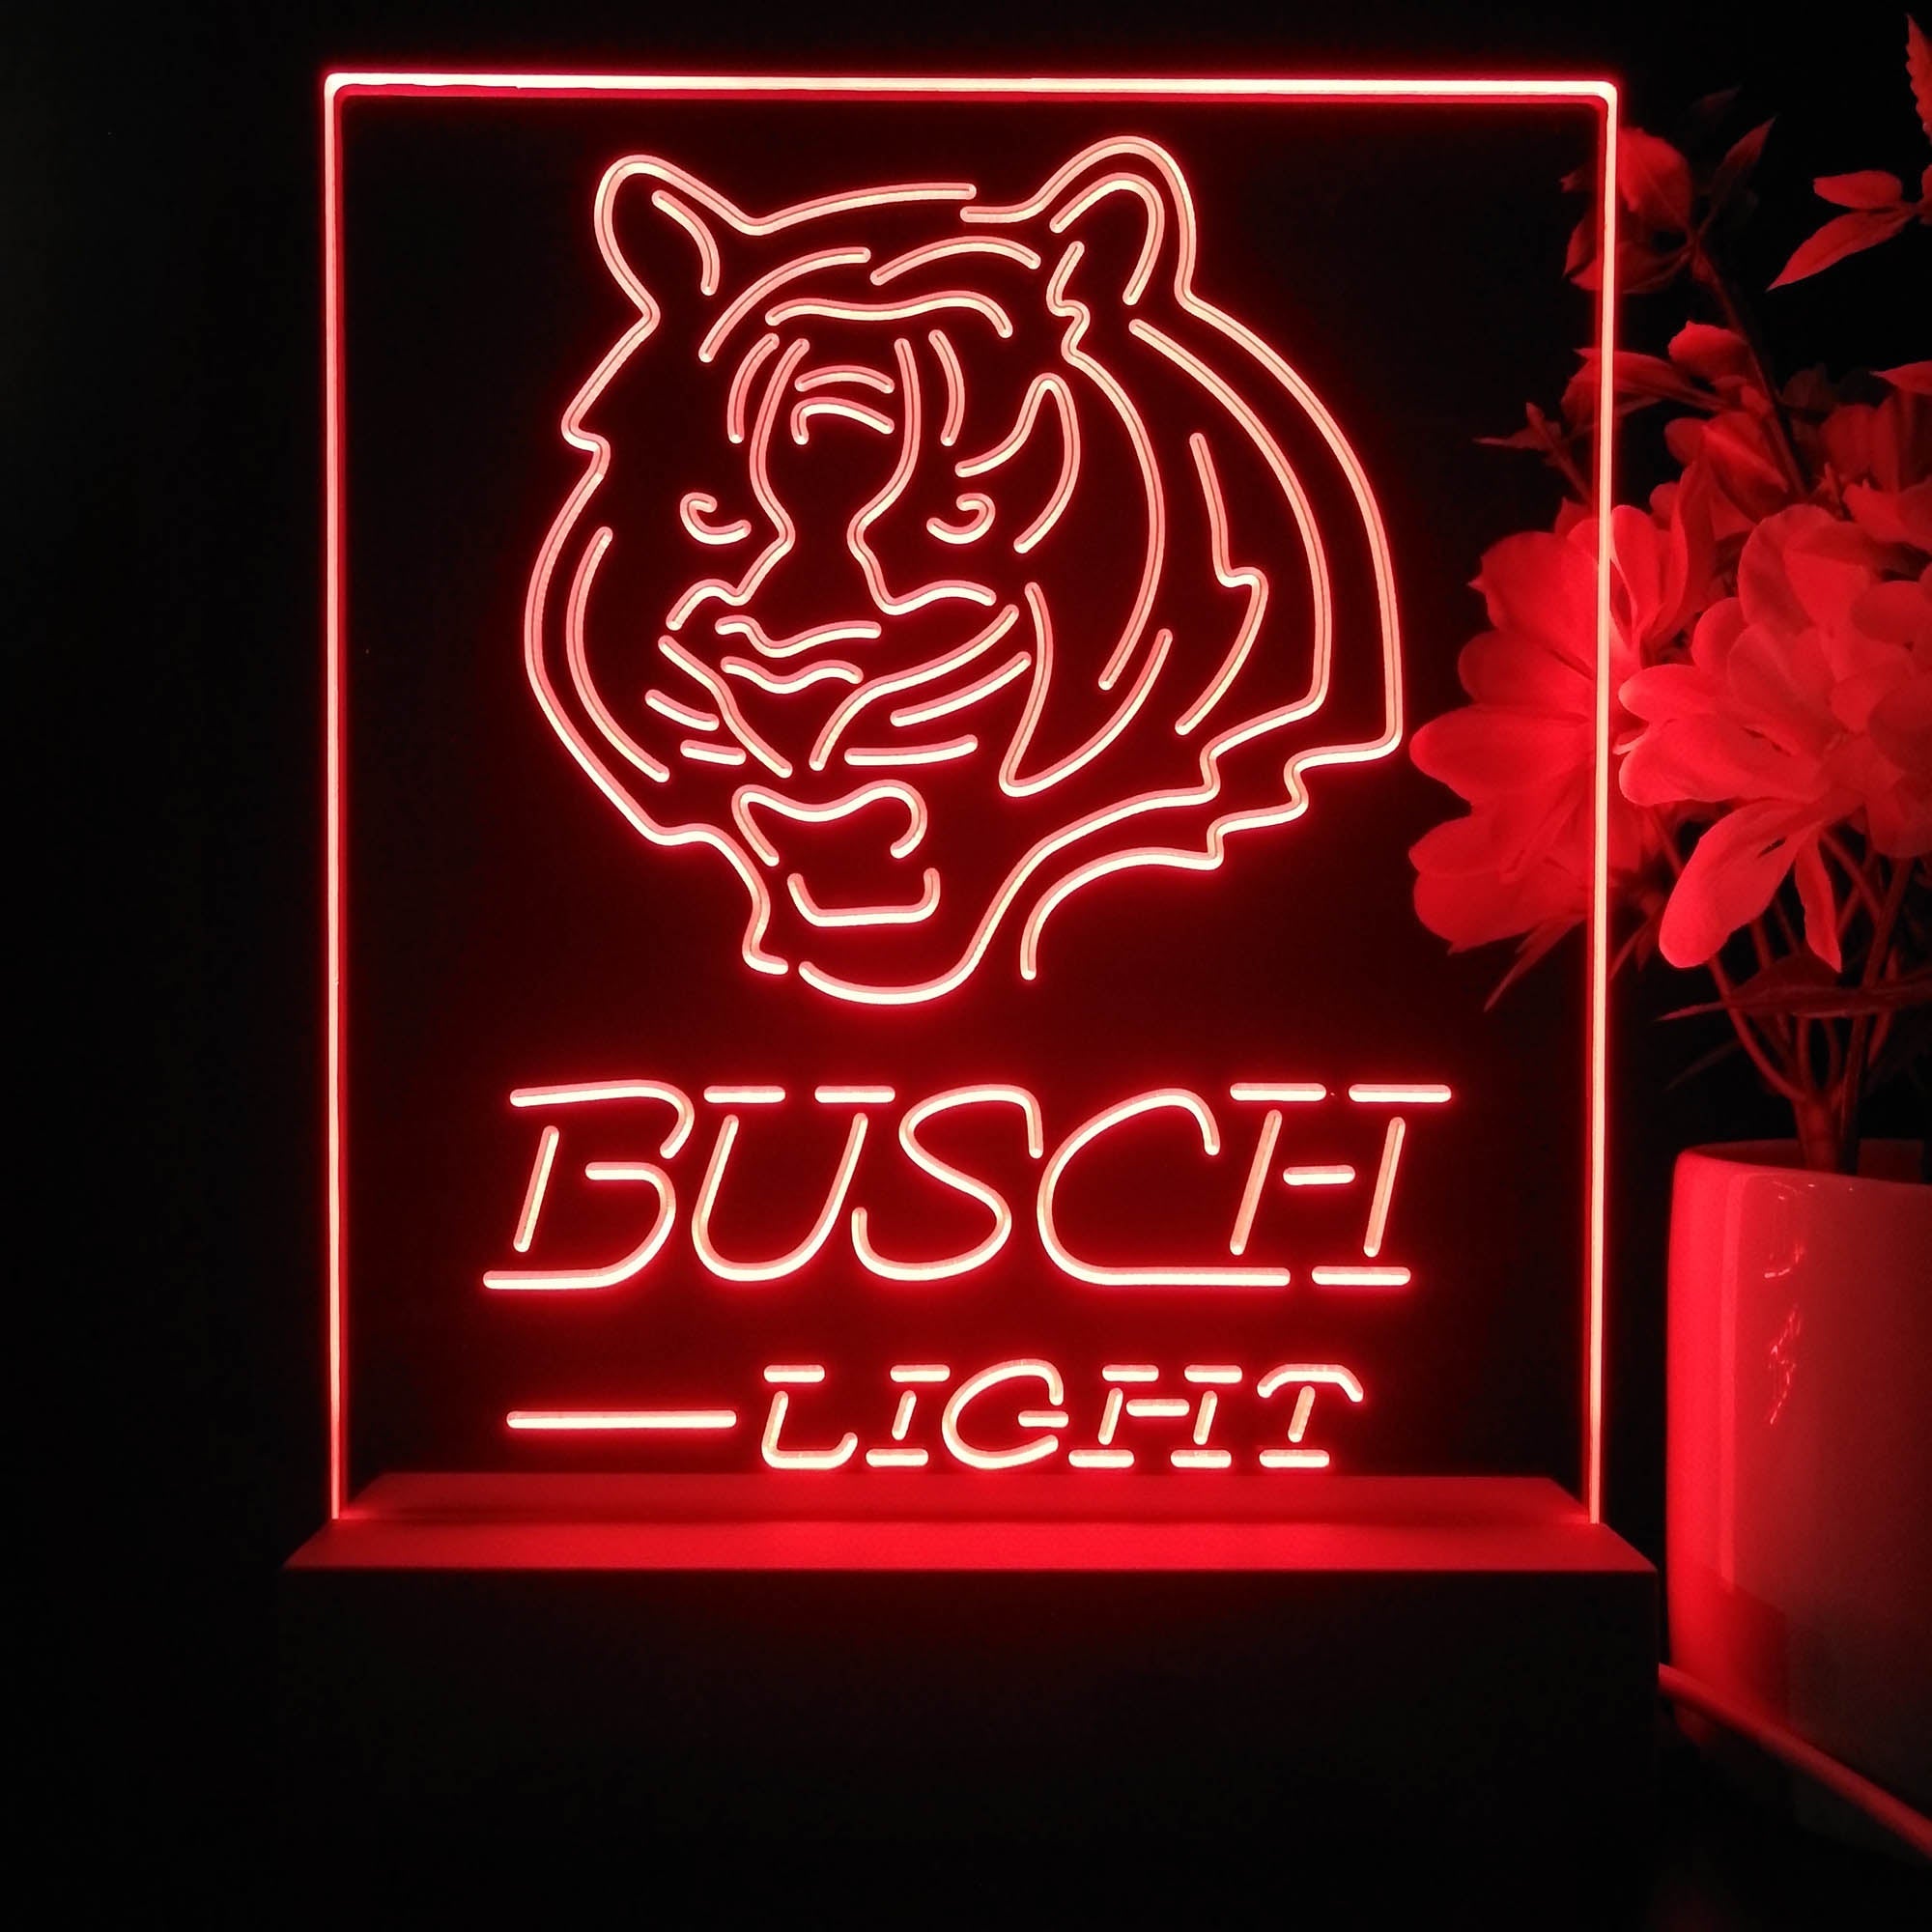 Cincinnati Bengals Busch Light Neon Sign Pub Bar Lamp